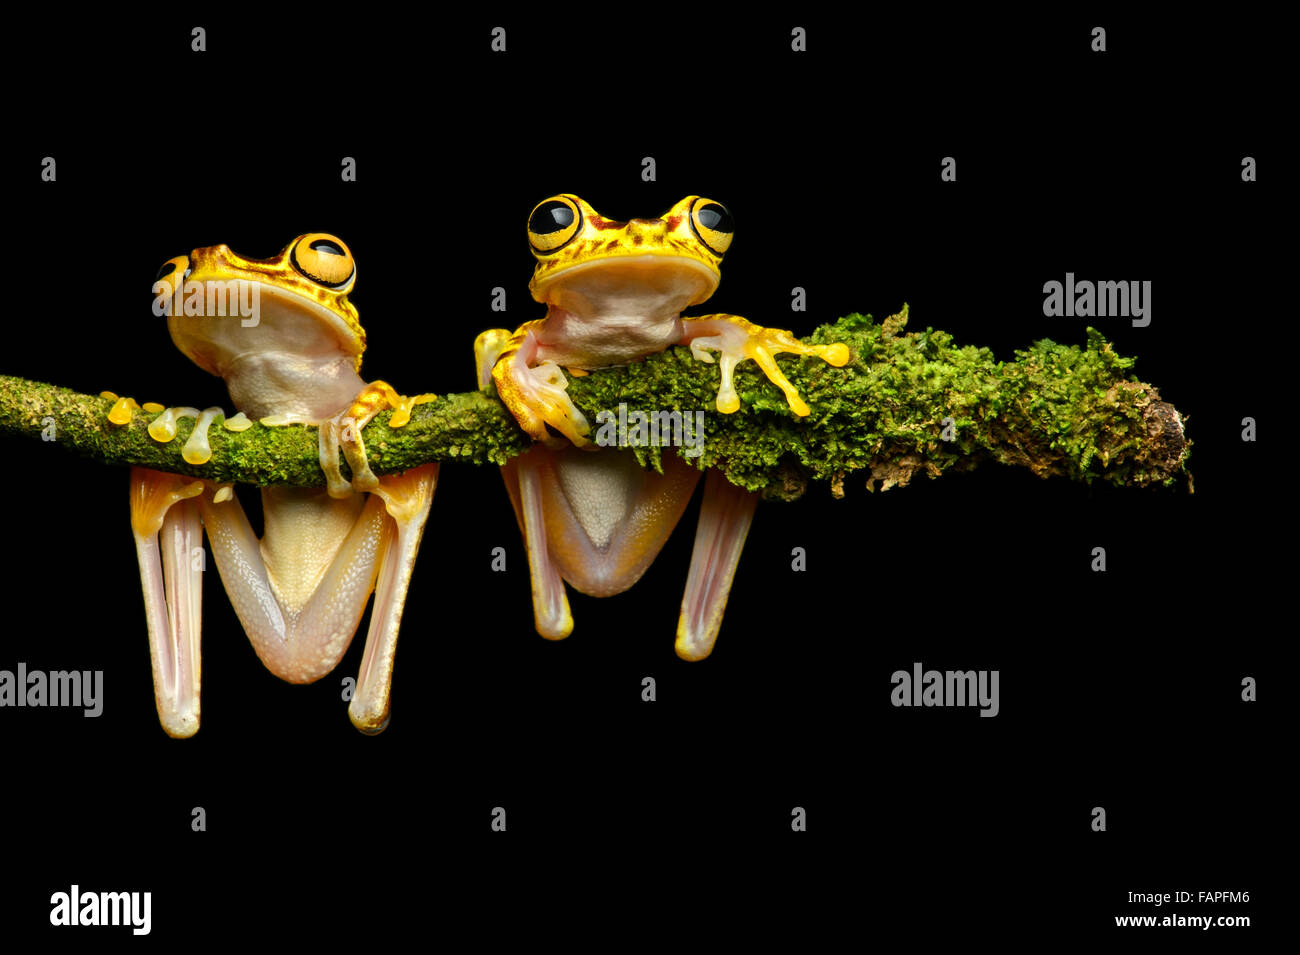 Two Imbabura Treefrogs (Hypsiboas pictuator), Treefrog family (Hylidae), Choco rainforest, Ecuador Stock Photo